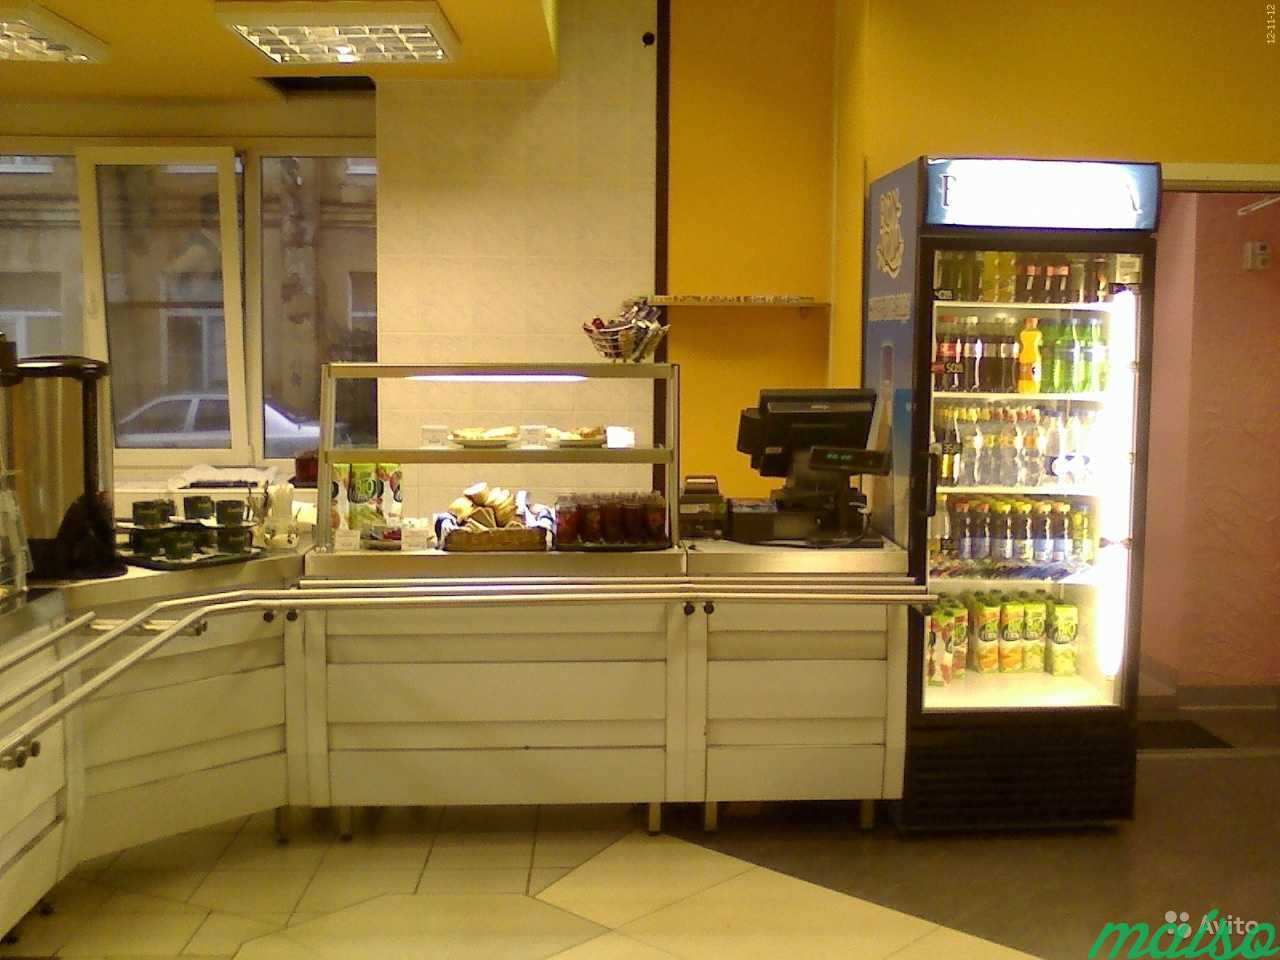 Программа для ресторана, кафе, бара и столовой в Санкт-Петербурге. Фото 5